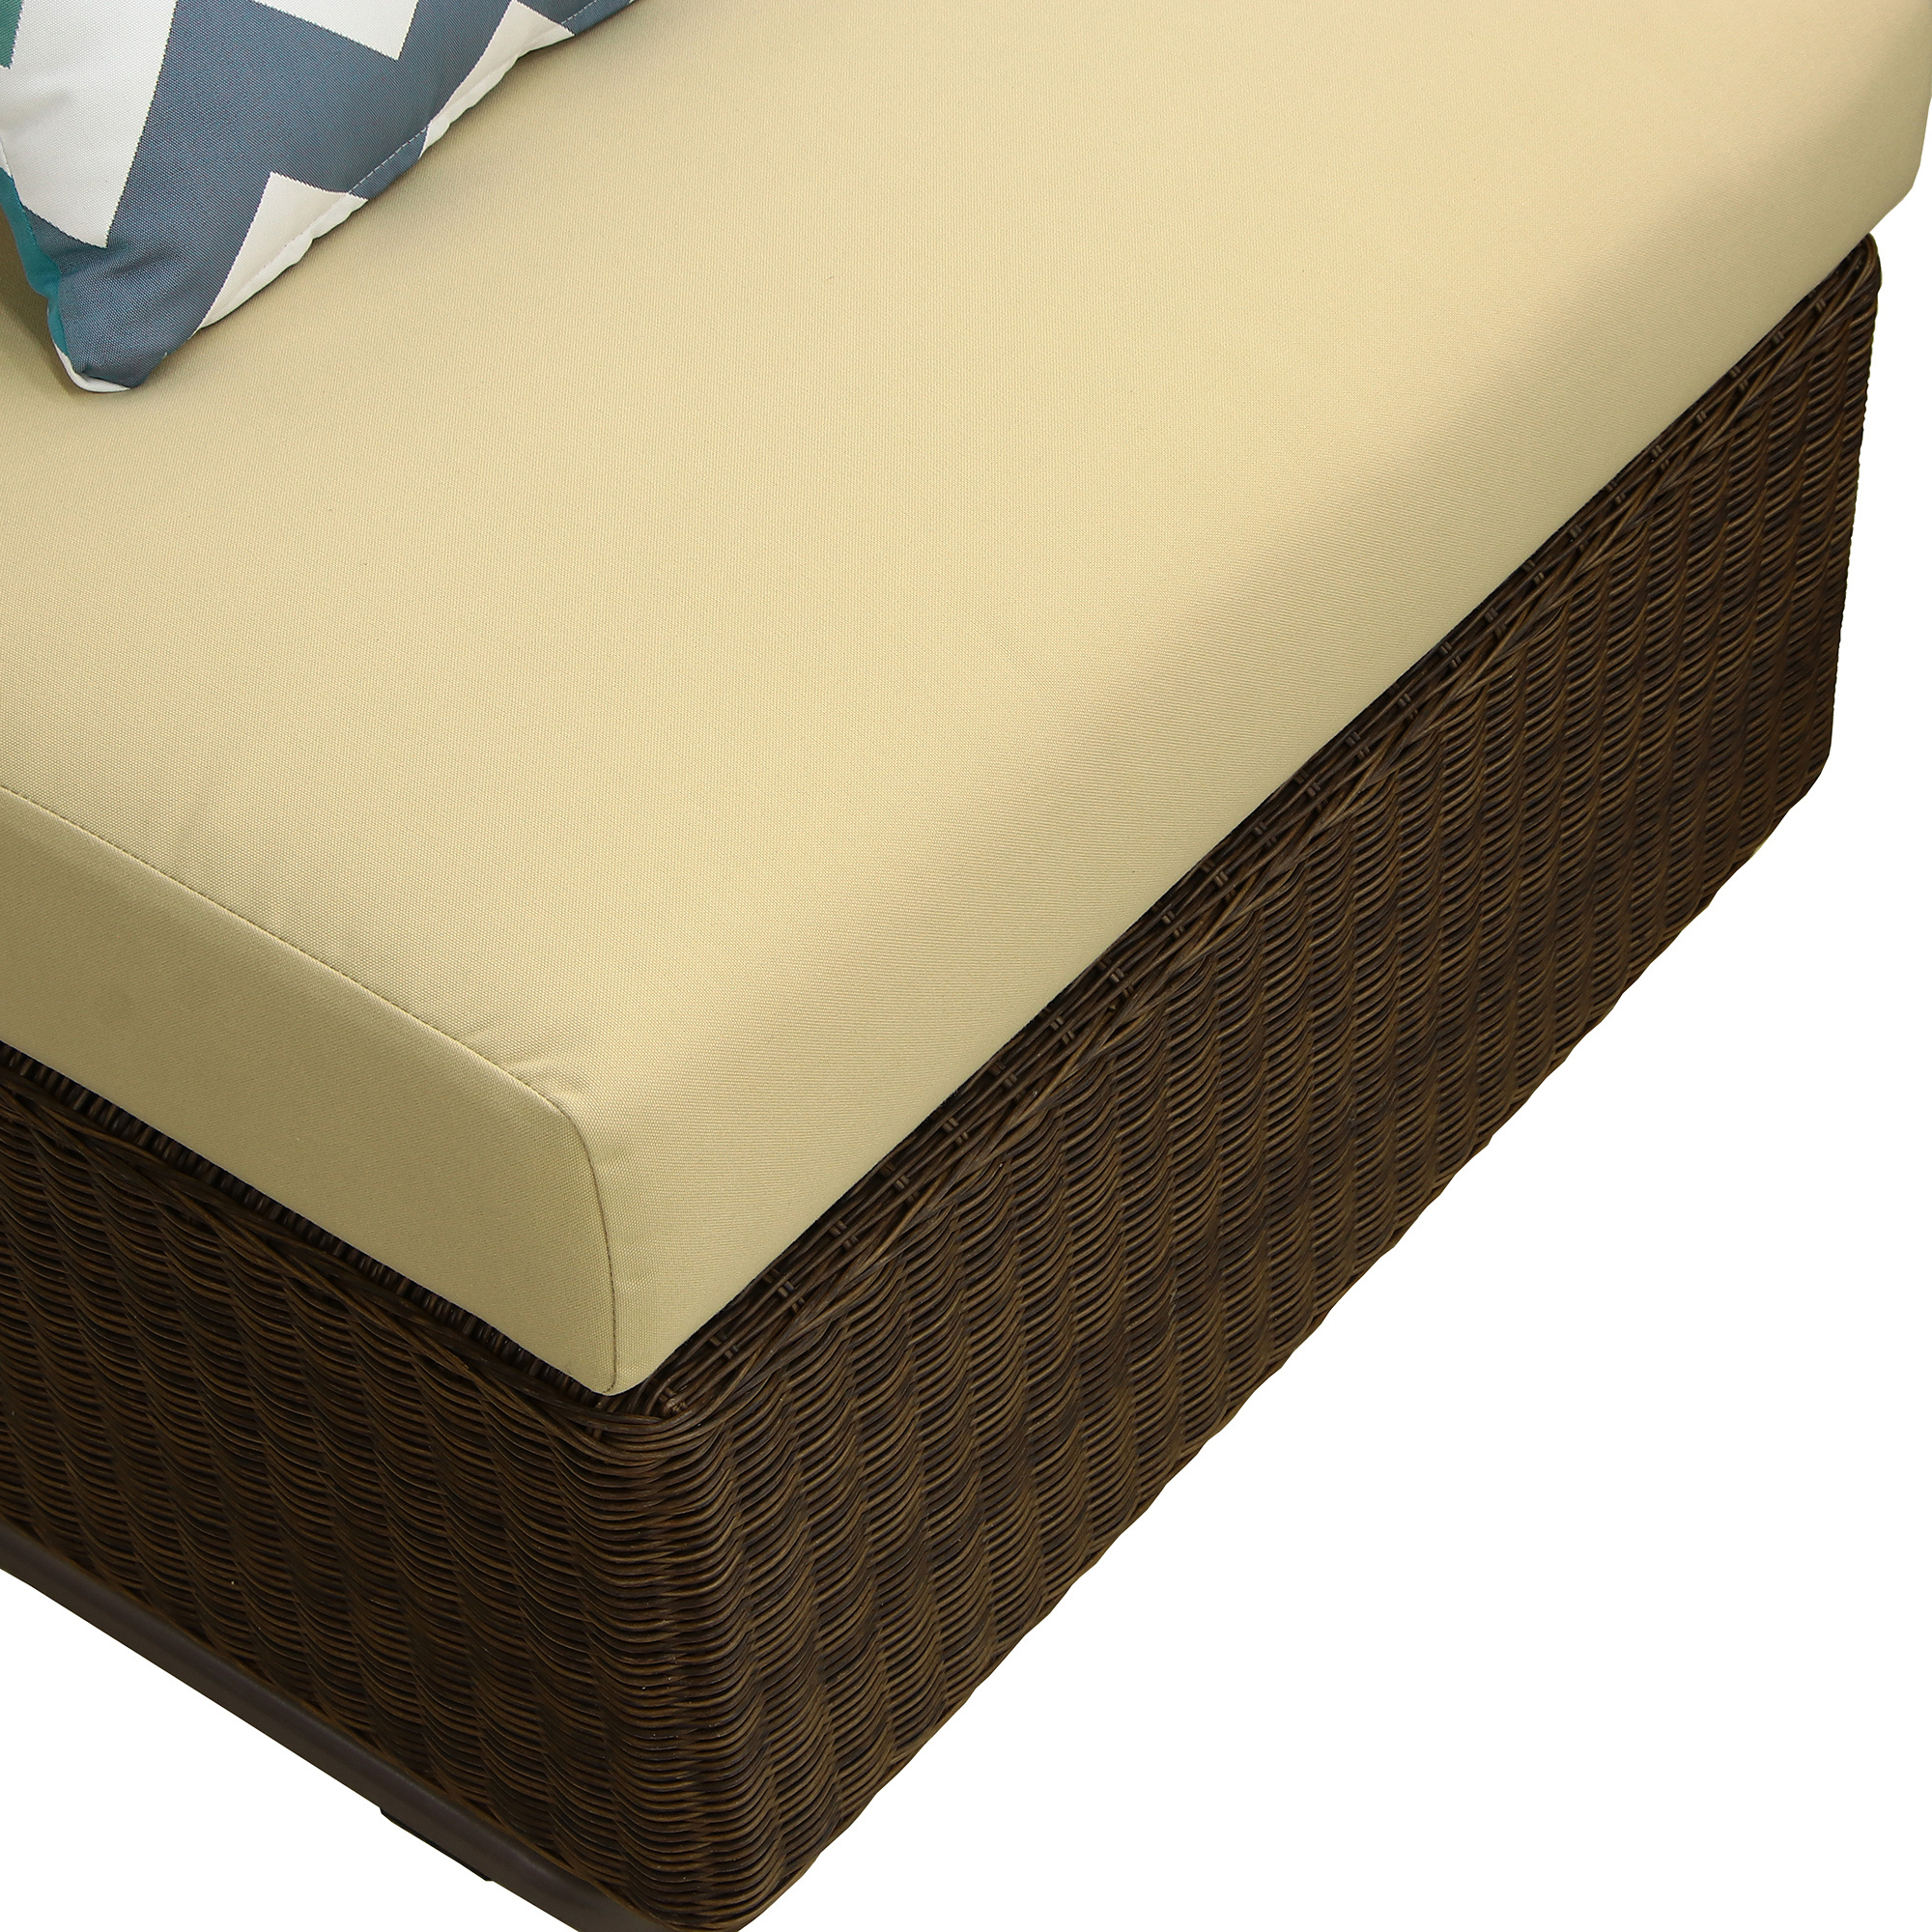 Комплект мебели угловой Ronica tusson 5 предметов, цвет коричневый, размер 60х60 - фото 13